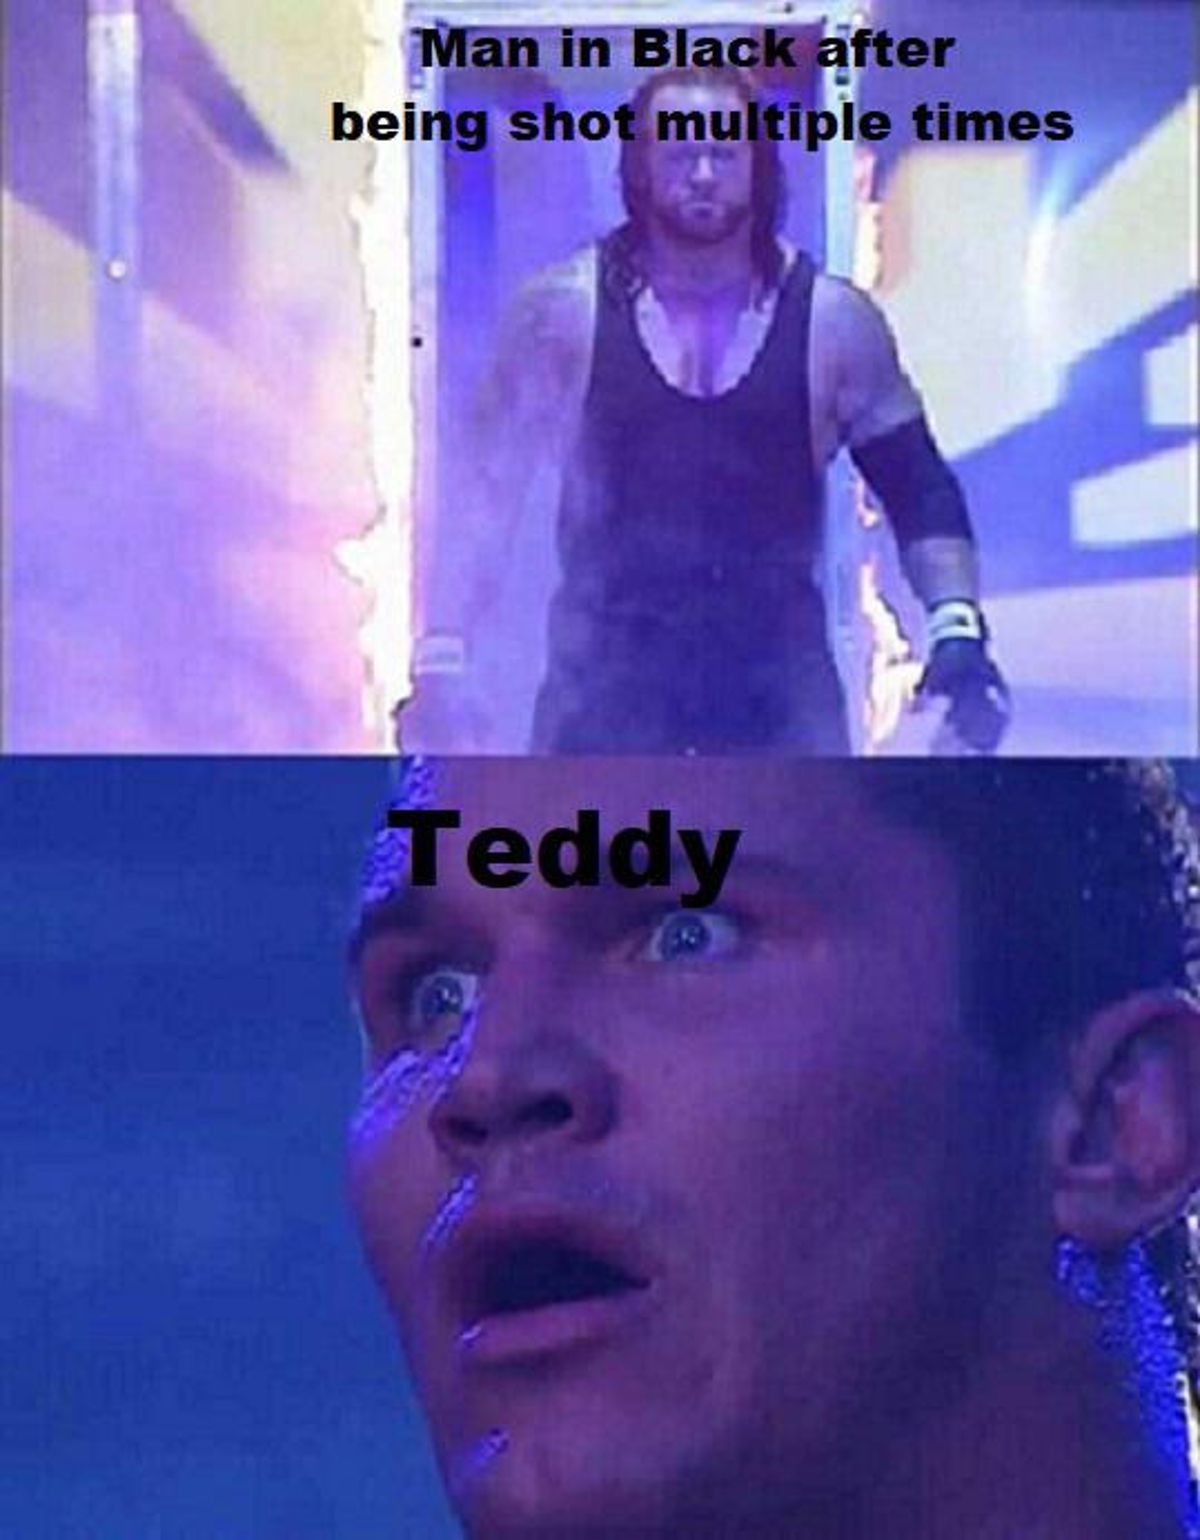 Westworld's Man in Black and Teddy as WWE wrestlers Reddit meme